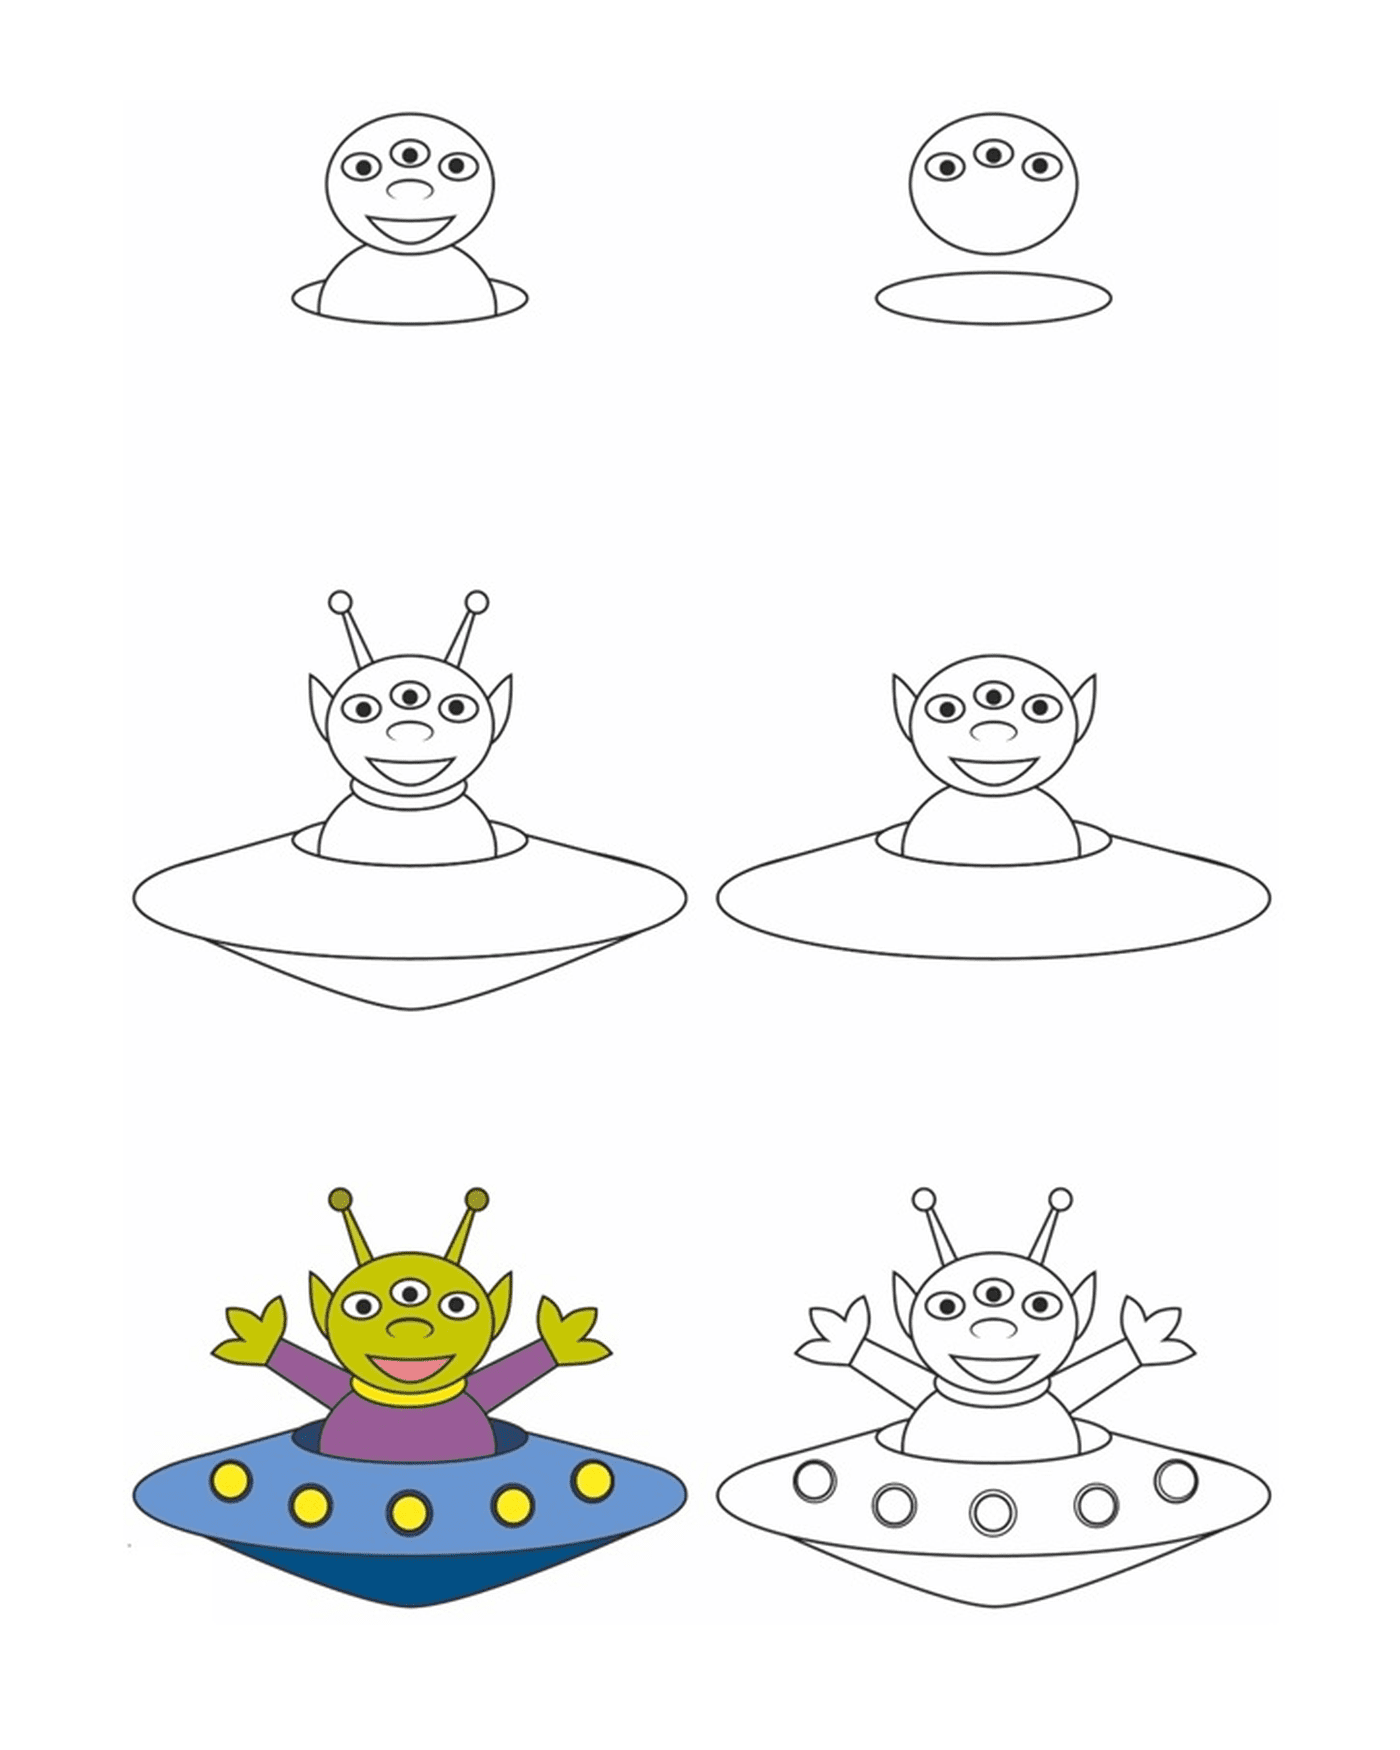  Como desenhar um alien 